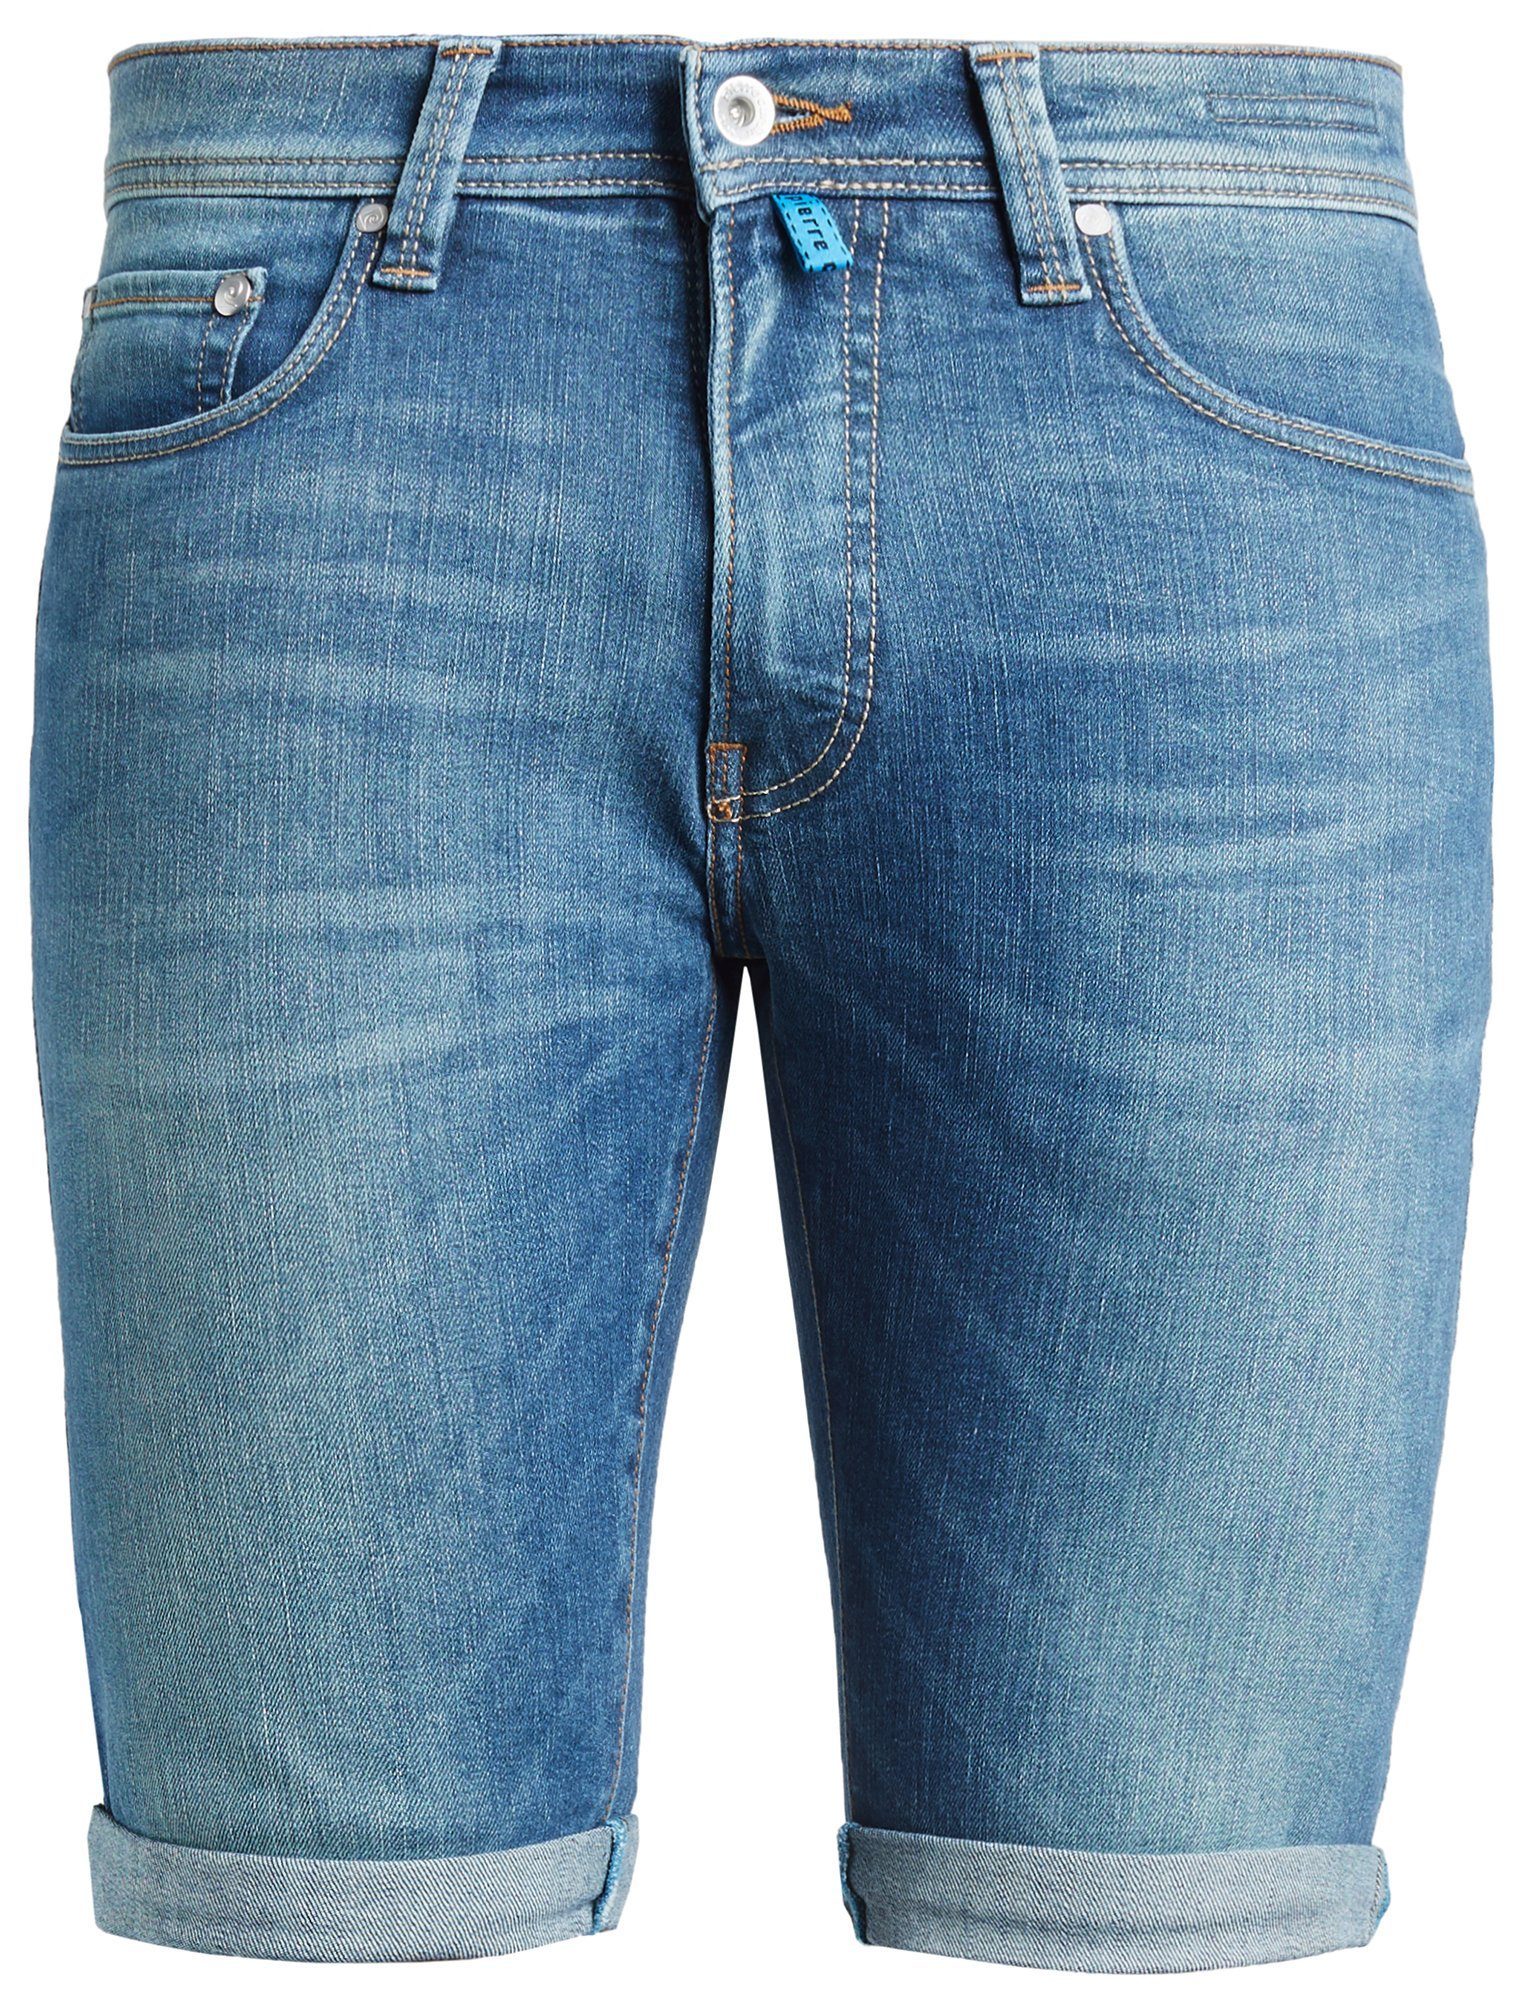 Pierre Cardin 5-Pocket-Jeans PIERRE CARDIN used green blue FUTUREFLEX washed 3452 8880.31 SHORTS